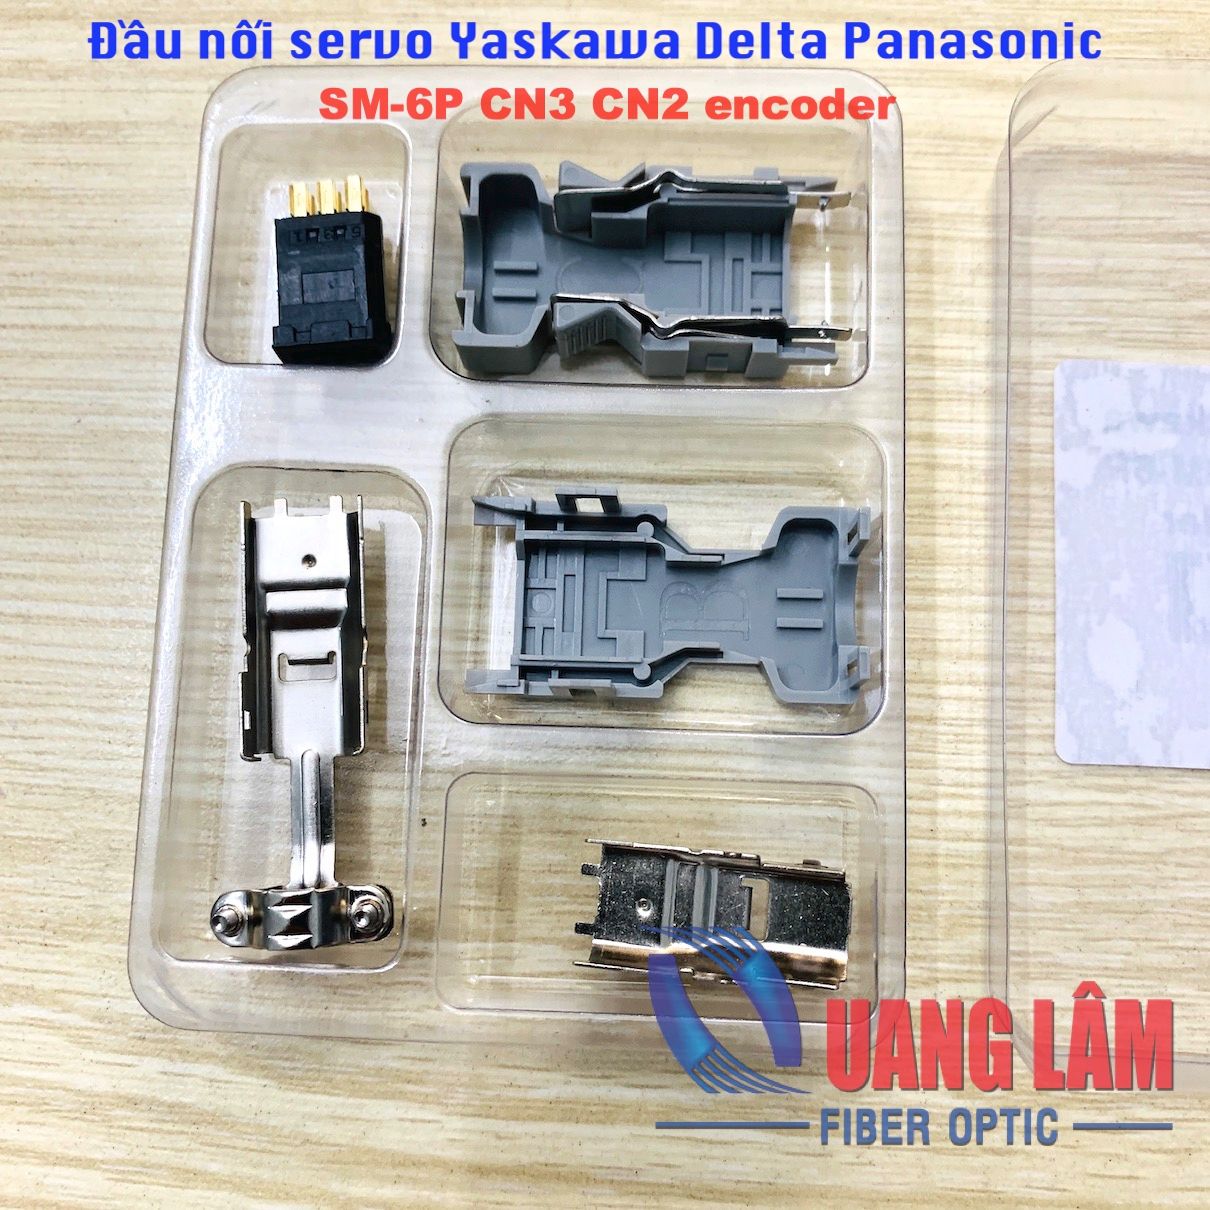 Đầu nối servo Yaskawa Delta Panasonic SM-6P CN3 CN2 encoder